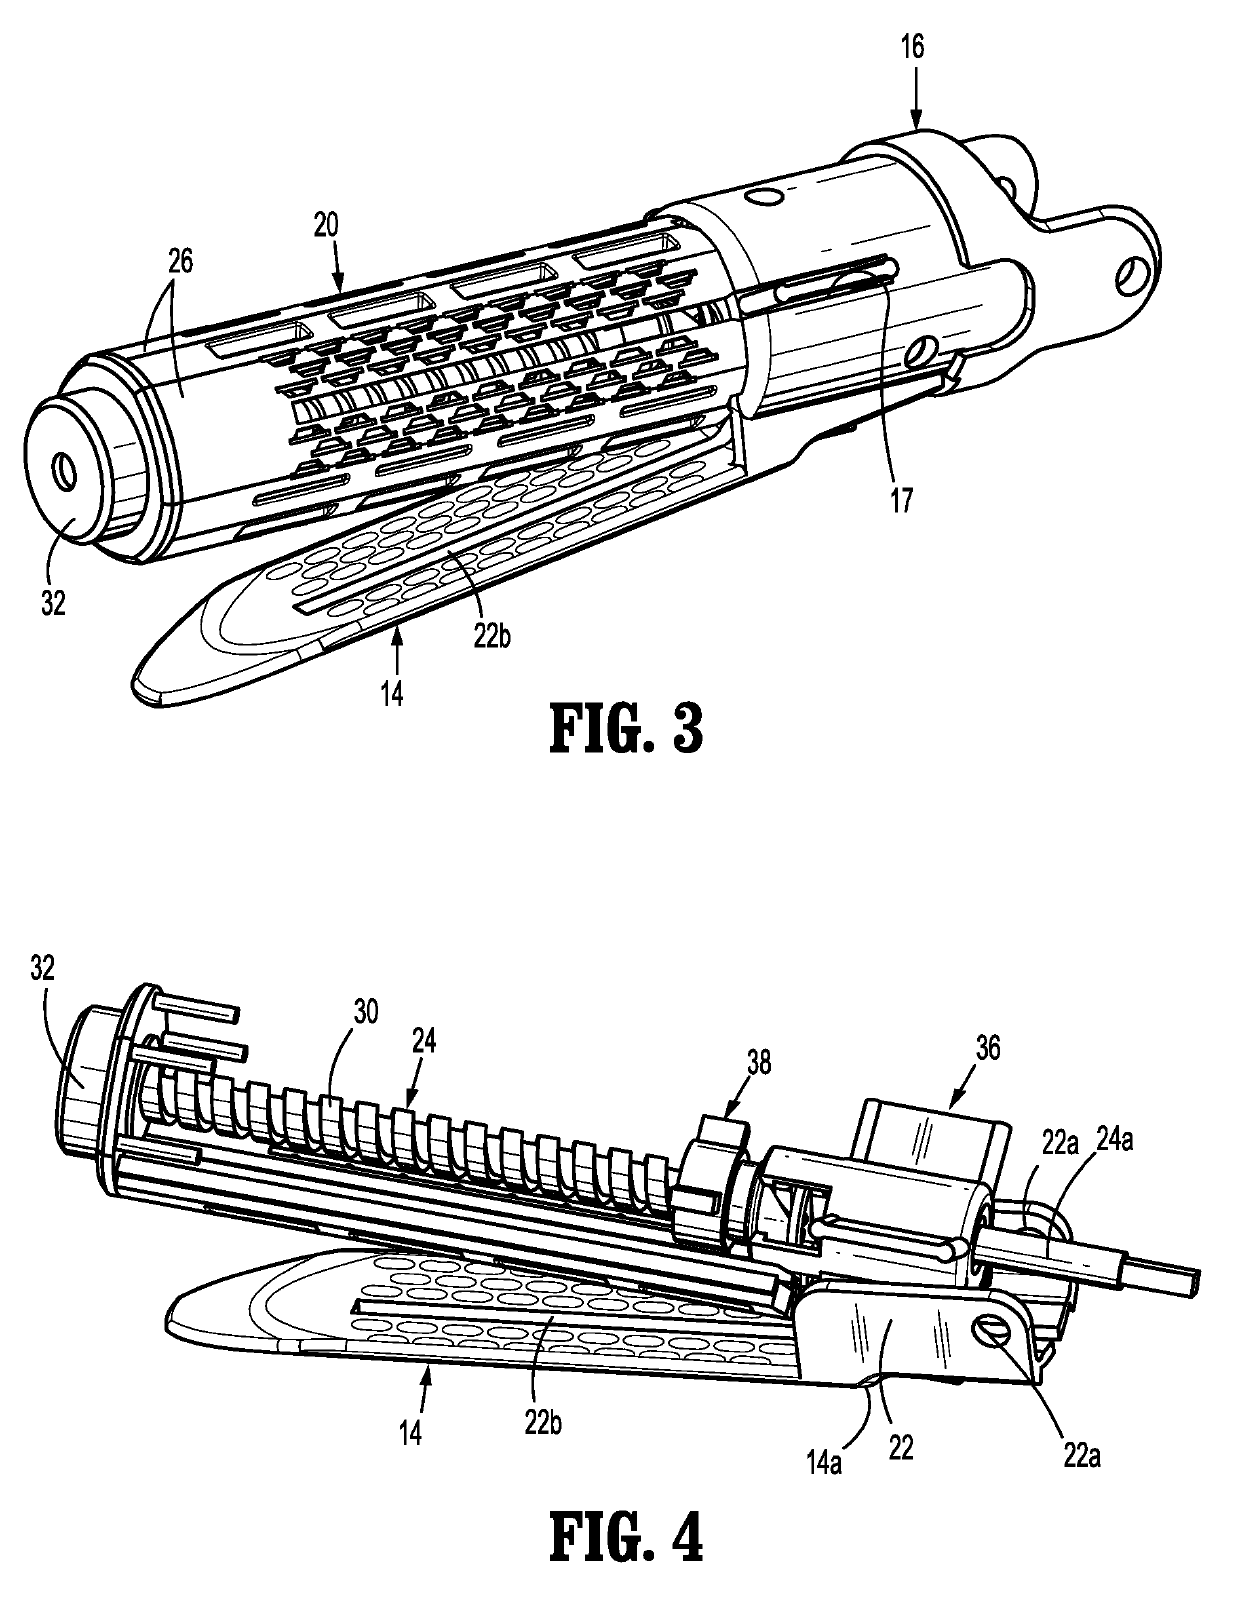 Multi-fire lead screw stapling device